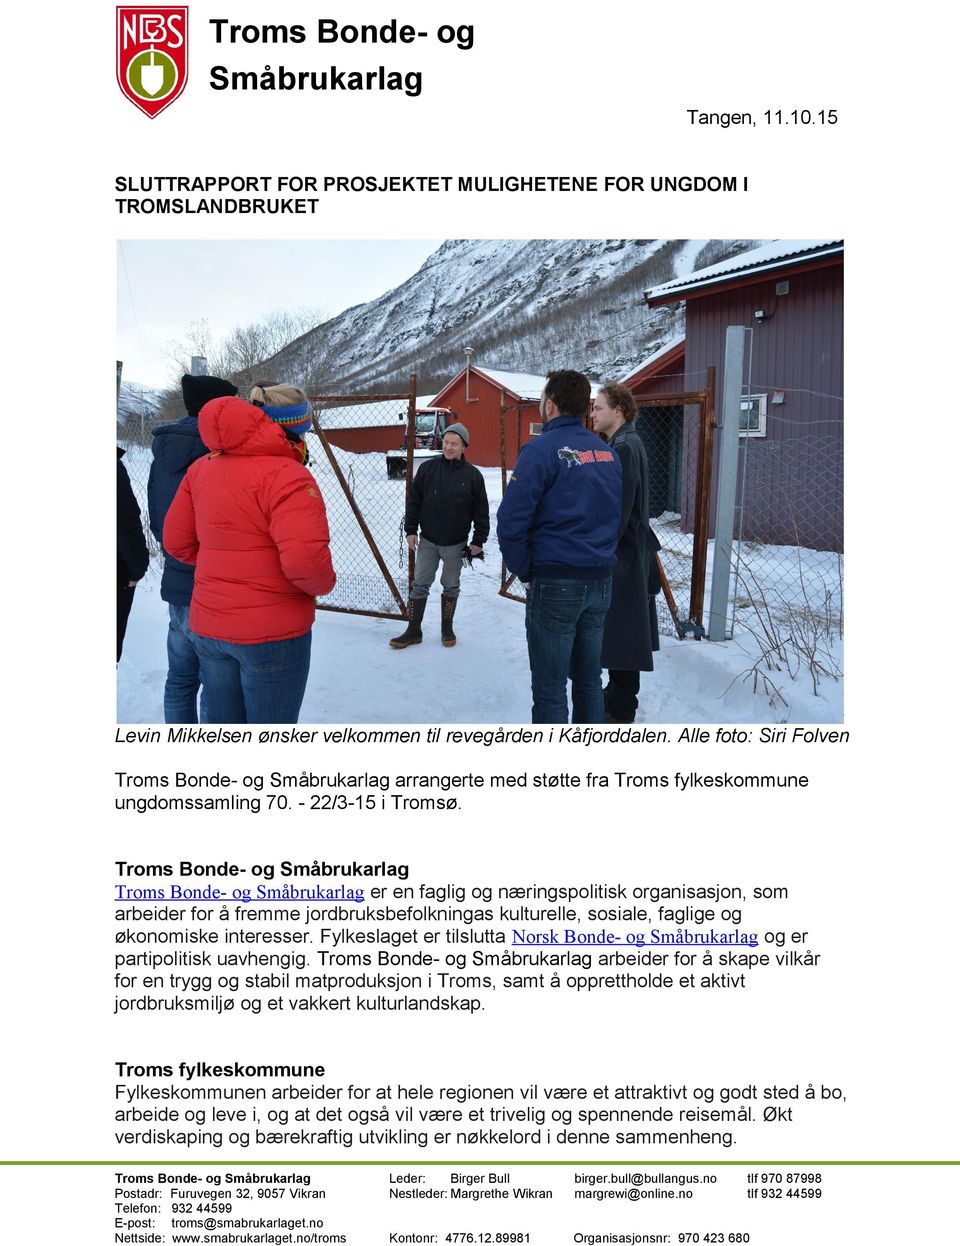 Troms Bonde- og Småbrukarlag Troms Bonde- og Småbrukarlag er en faglig og næringspolitisk organisasjon, som arbeider for å fremme jordbruksbefolkningas kulturelle, sosiale, faglige og økonomiske